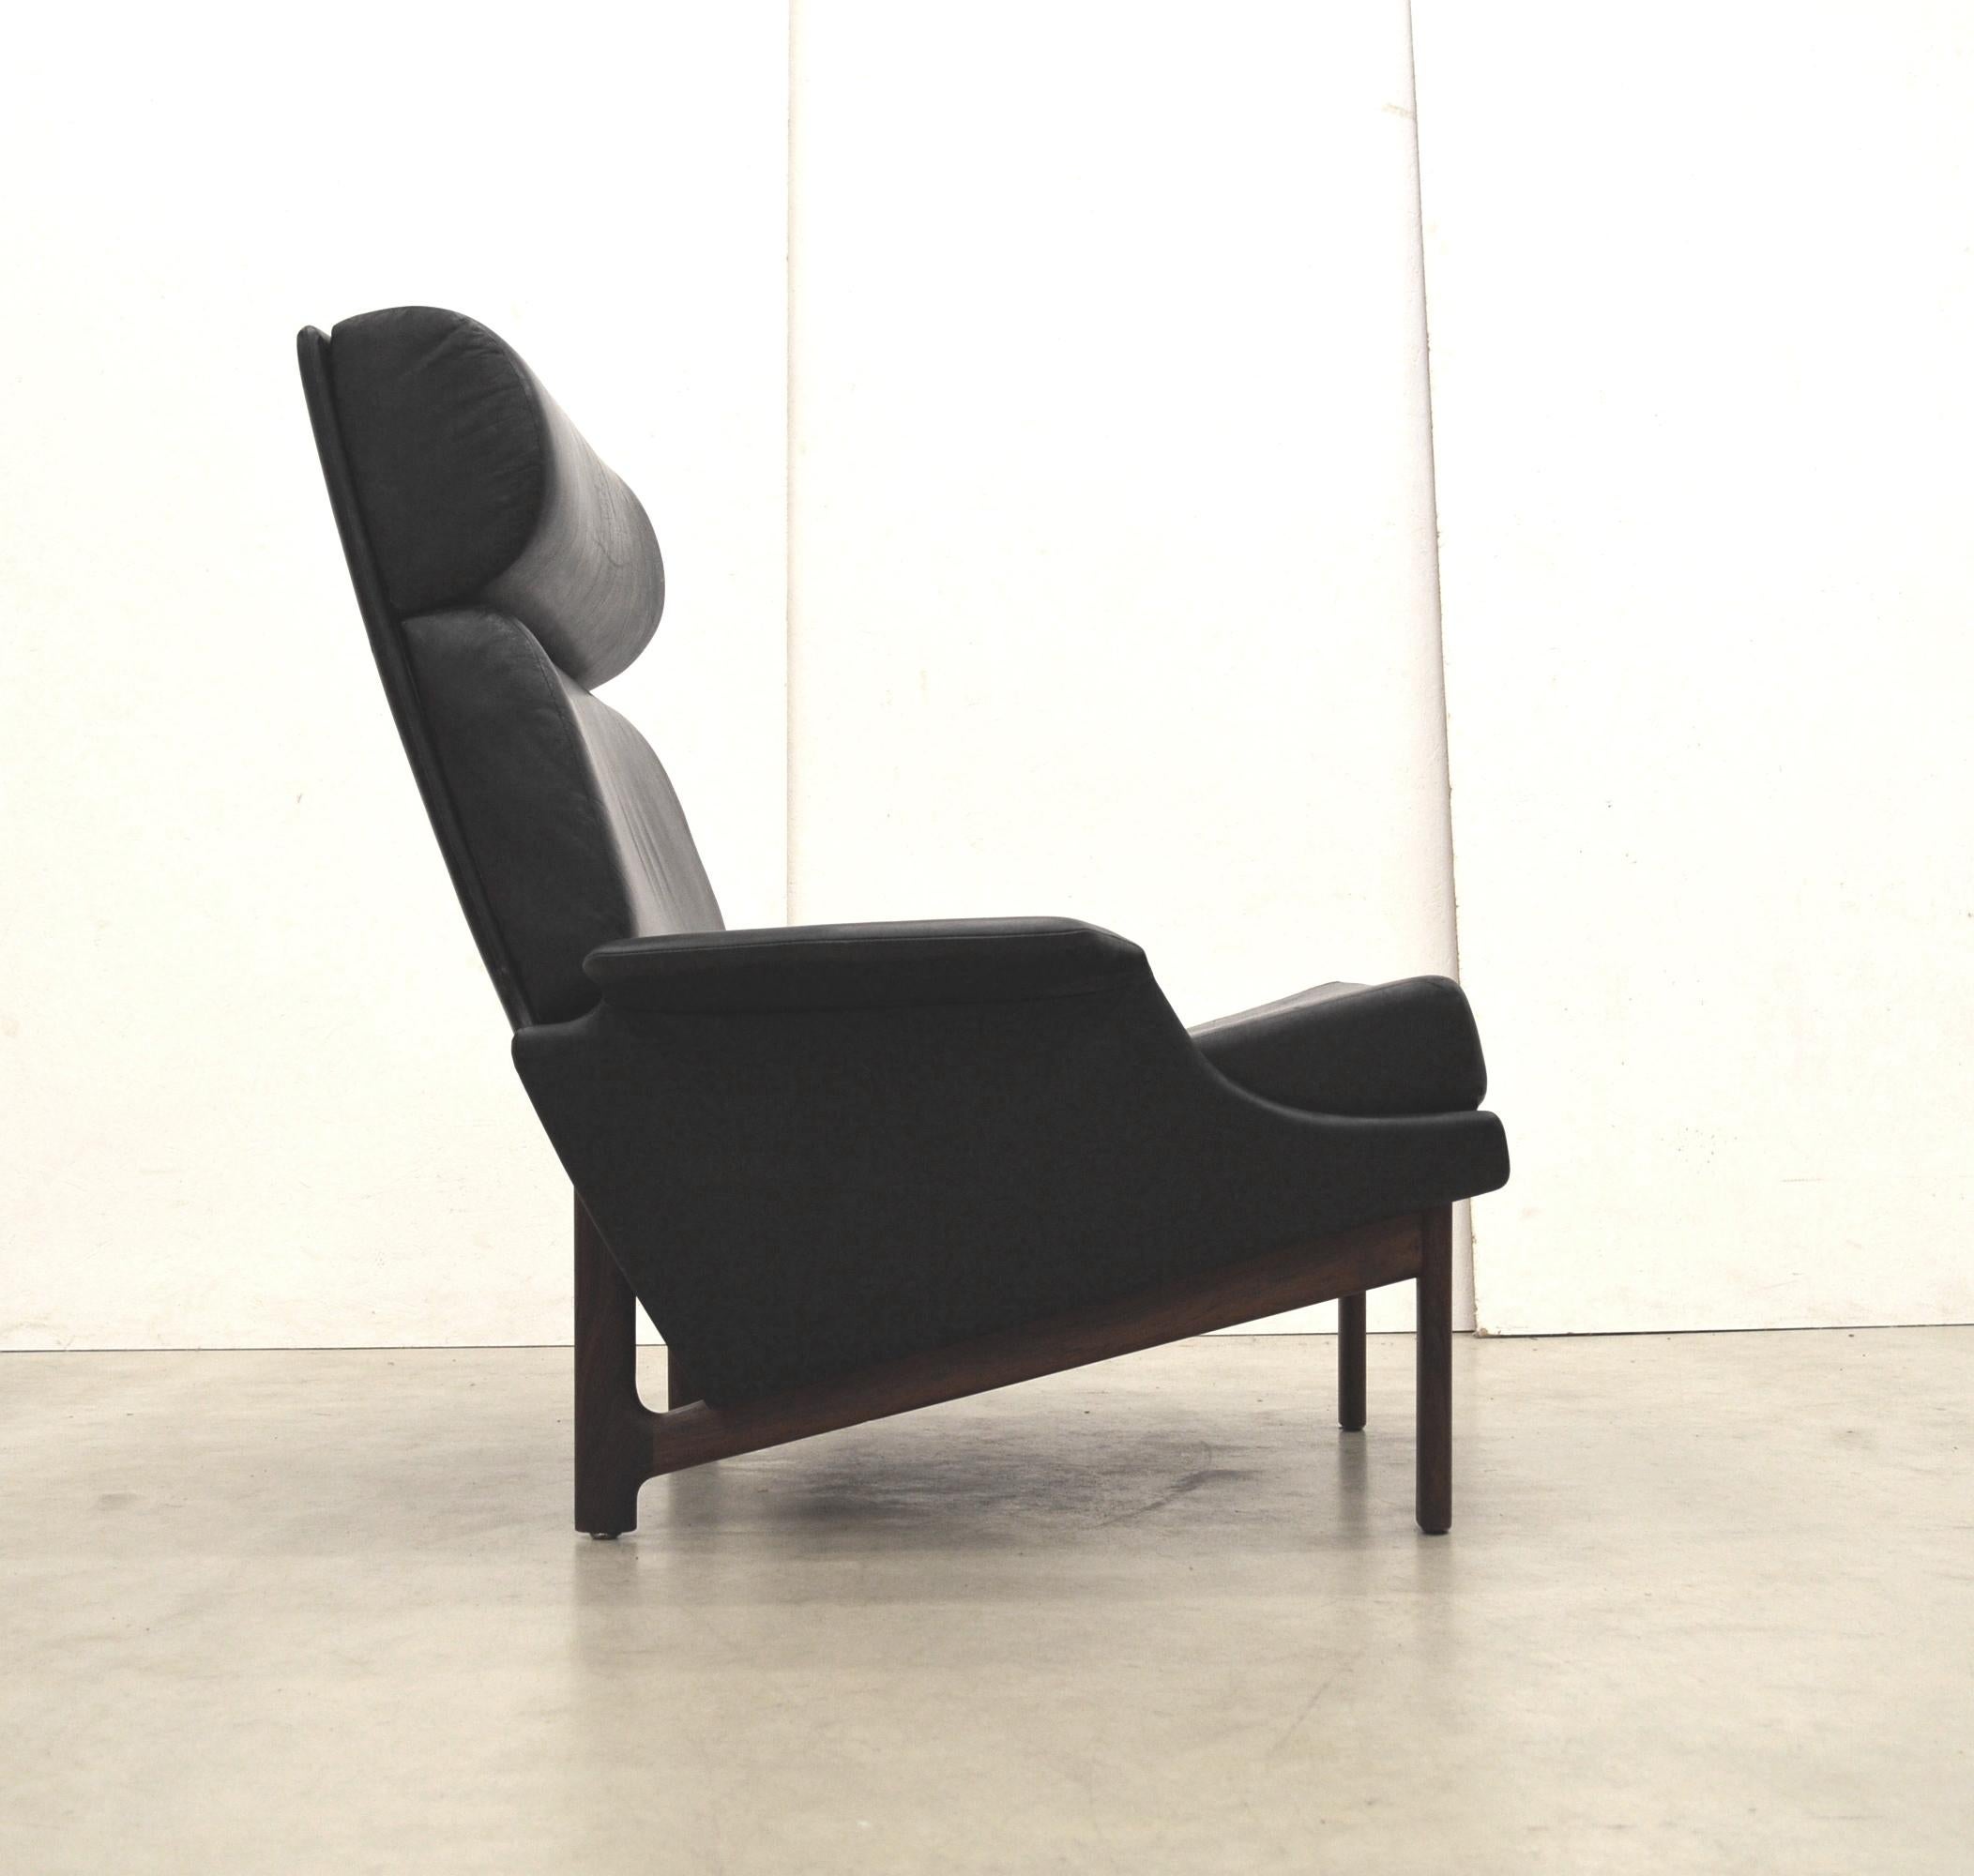 Rare chaise Adam de IB Kofod Larsen pour Mogens Kold Mobelfabrik Danemark.
Conçu en 1958 et produit au début des années 1960.

Édition précoce avec une merveilleuse sellerie en cuir noir et un étonnant socle en bois de rose.
Pièce intemporelle